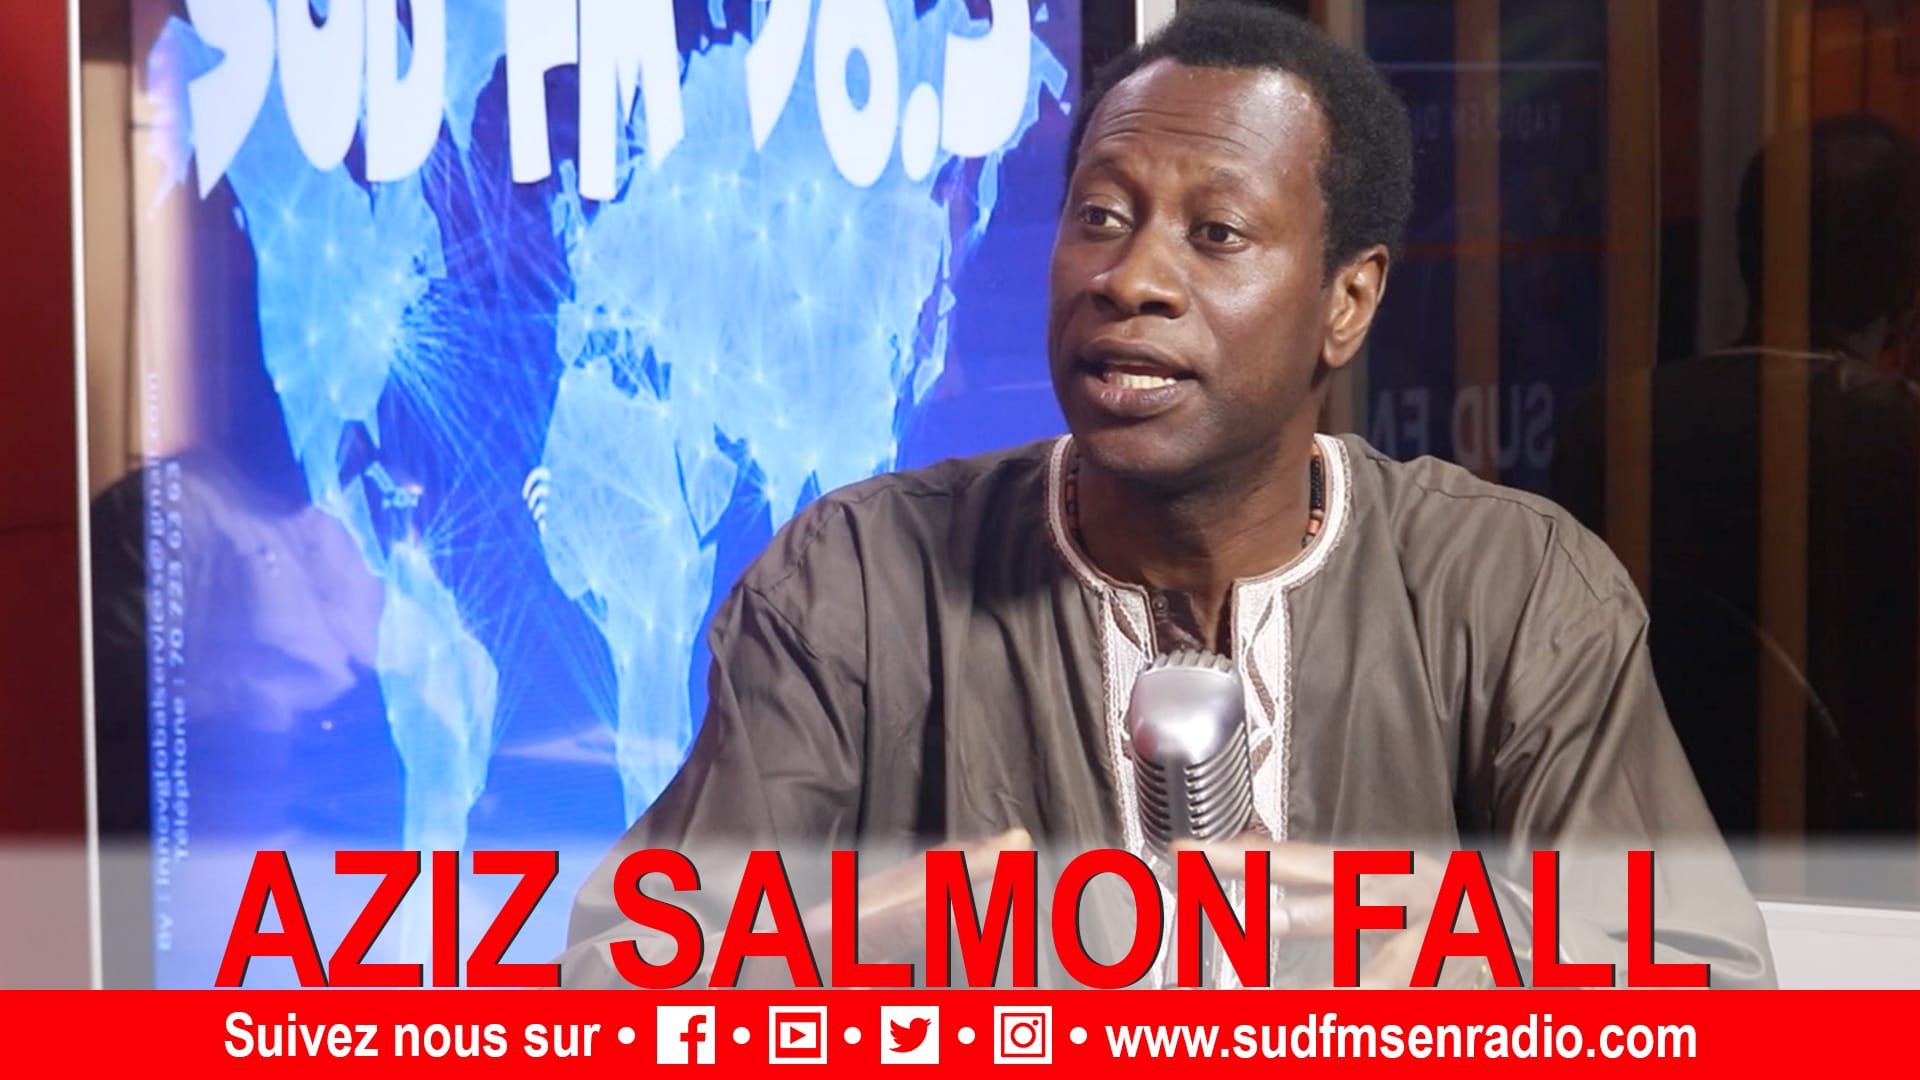 3e mandat : « Personne n’est aussi fou au Sénégal pour le faire », Aziz Salmone Fall